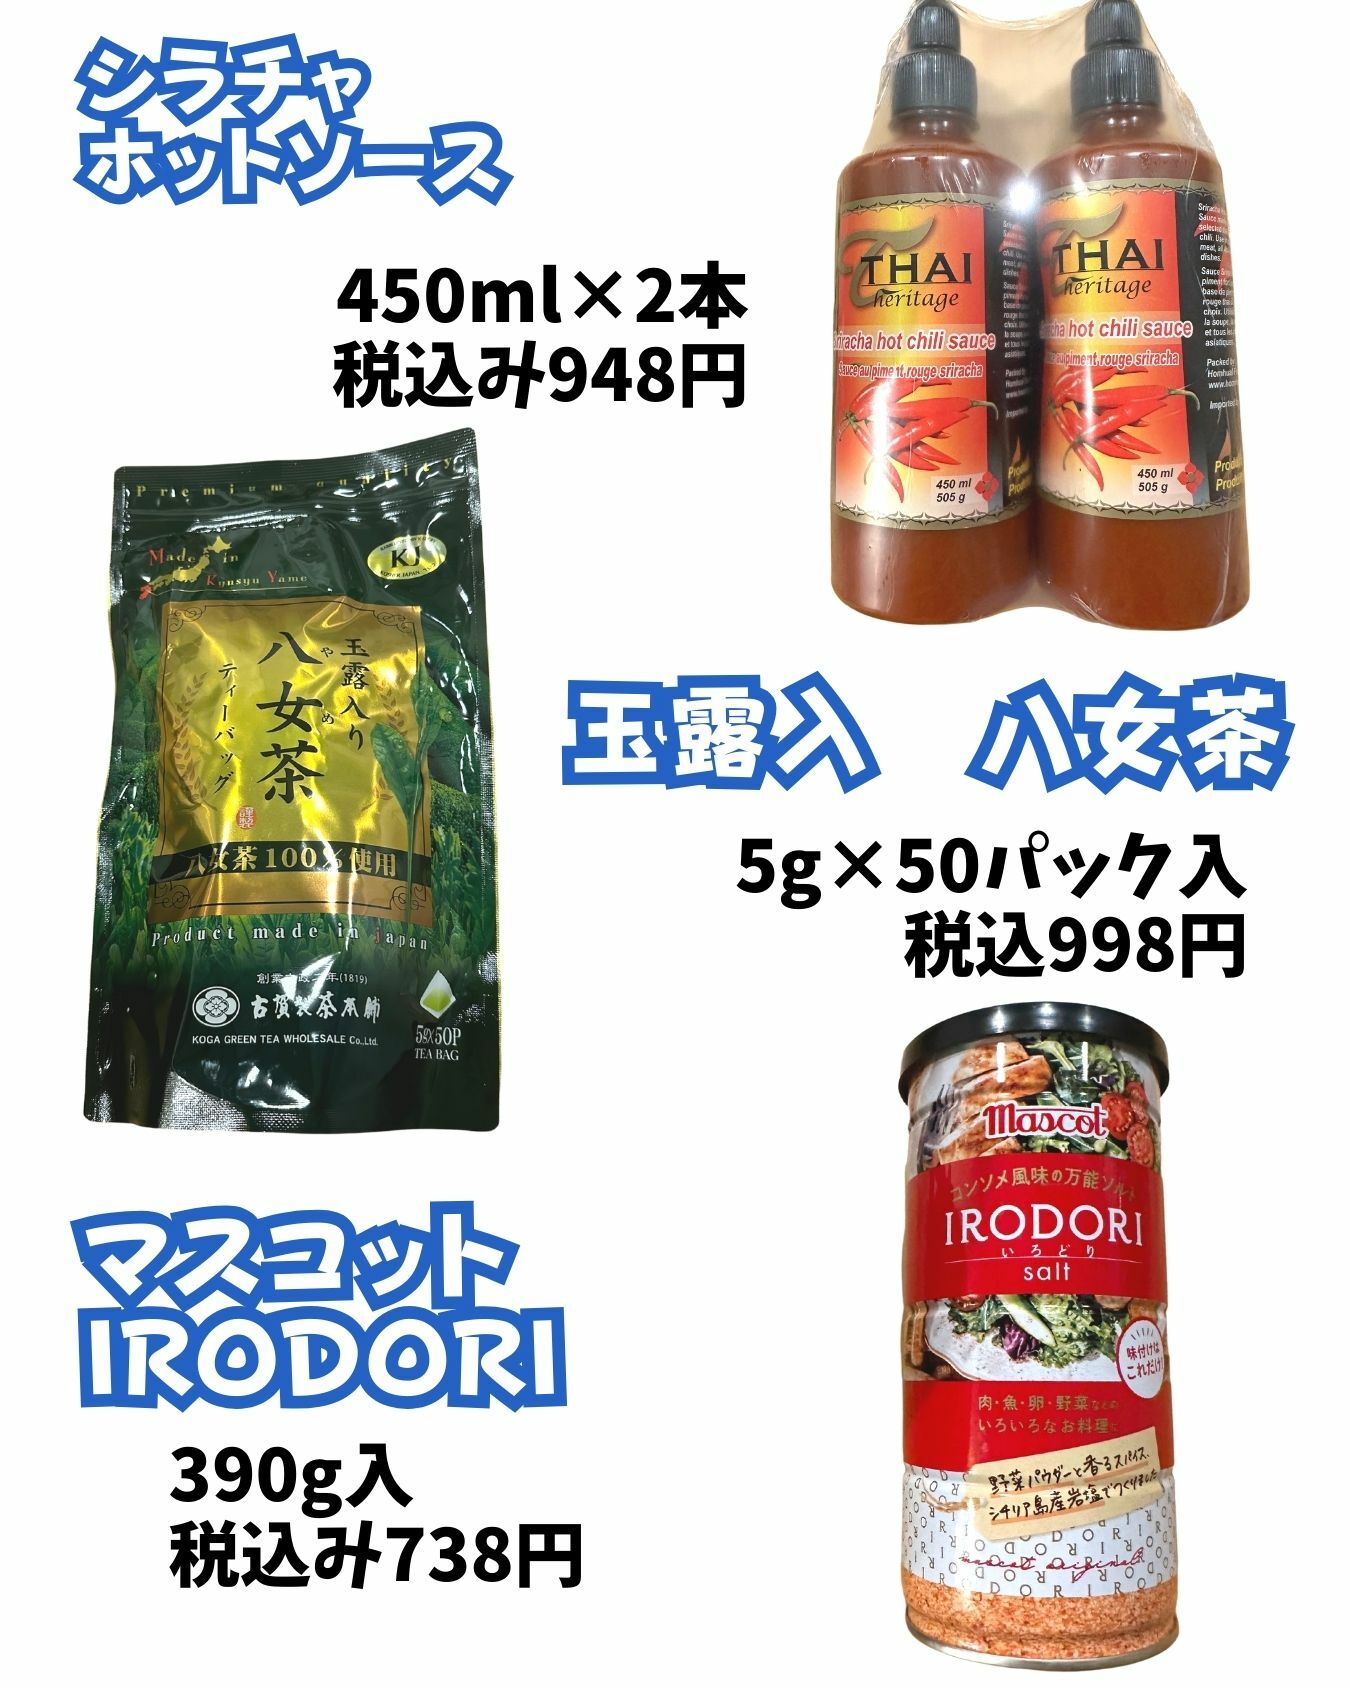 【コストコ】シラチャーソース、八女茶、IRODORIソルト